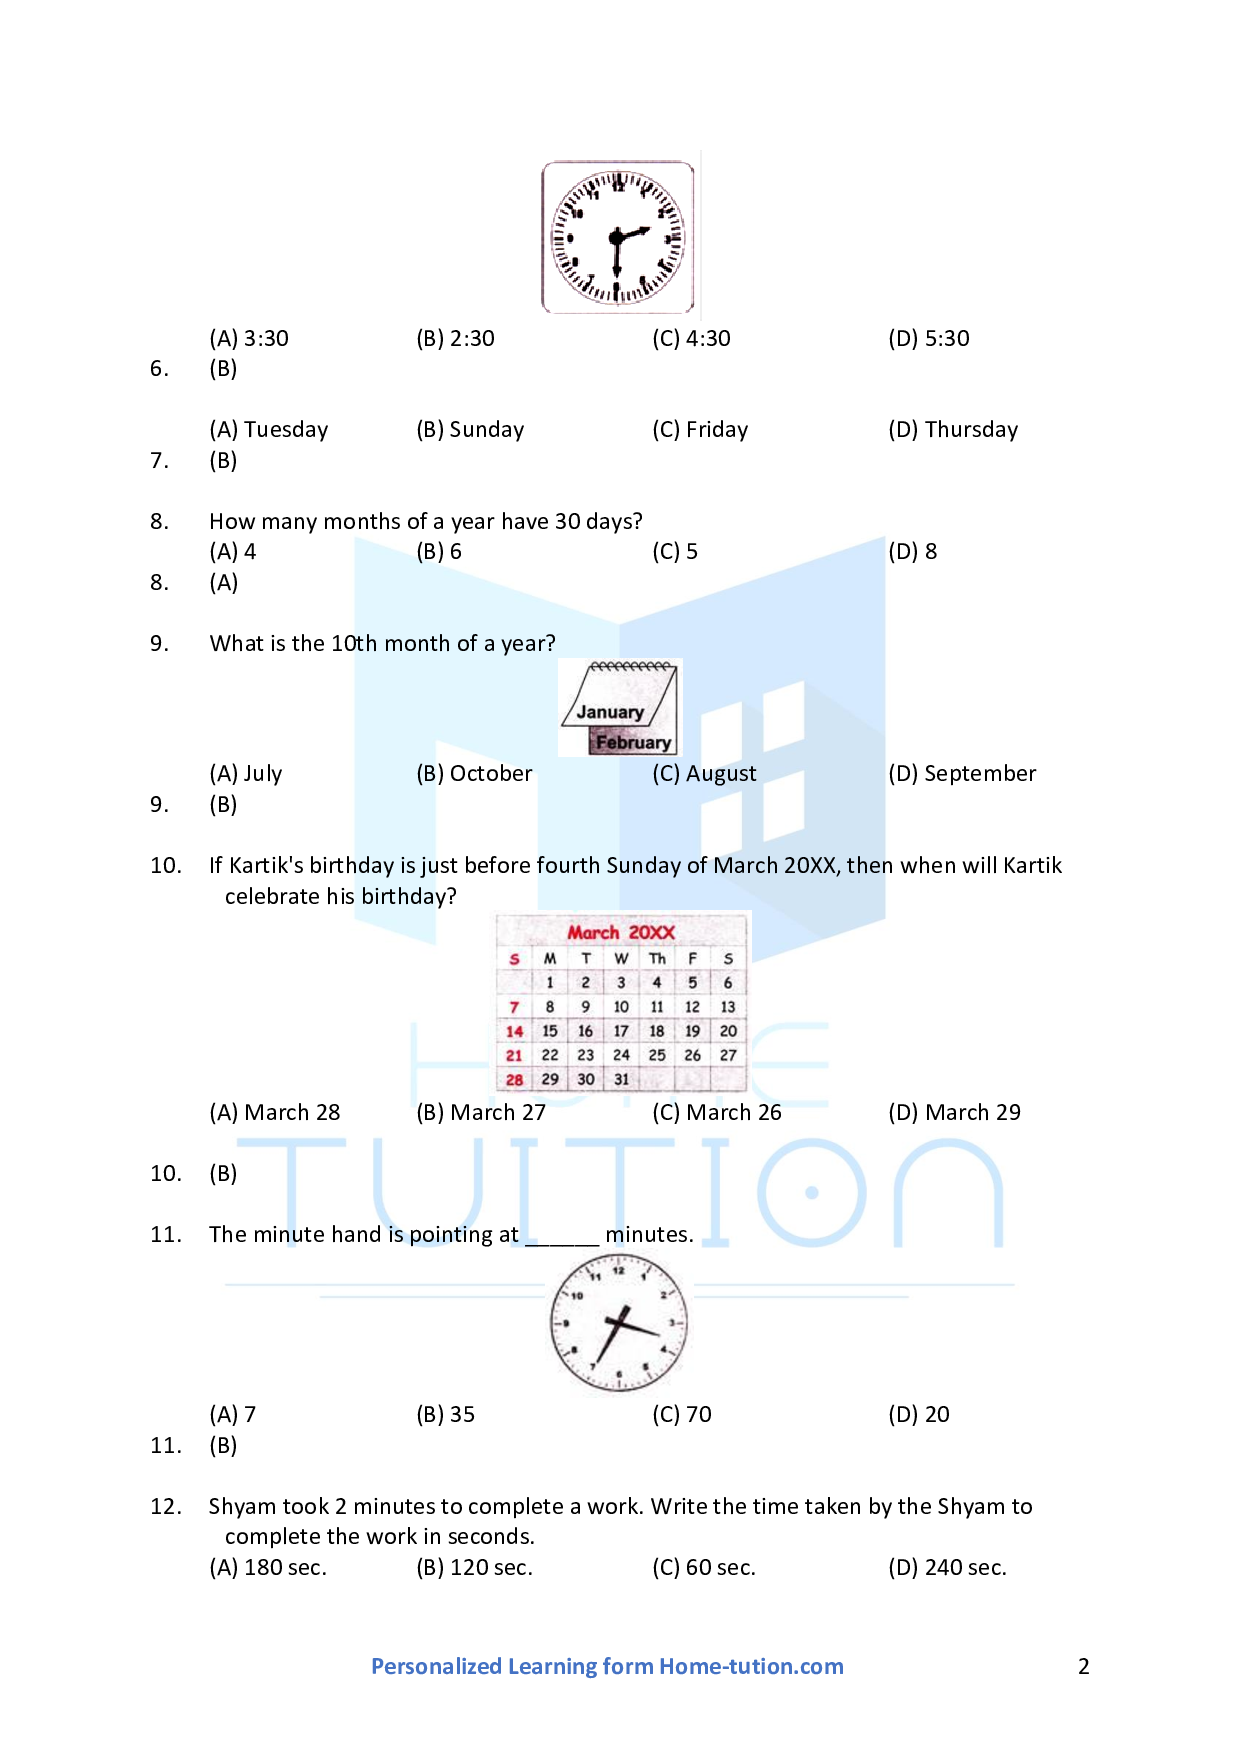 cbse-class-1-maths-chapter-6-time-calendar-worksheet-home-tution